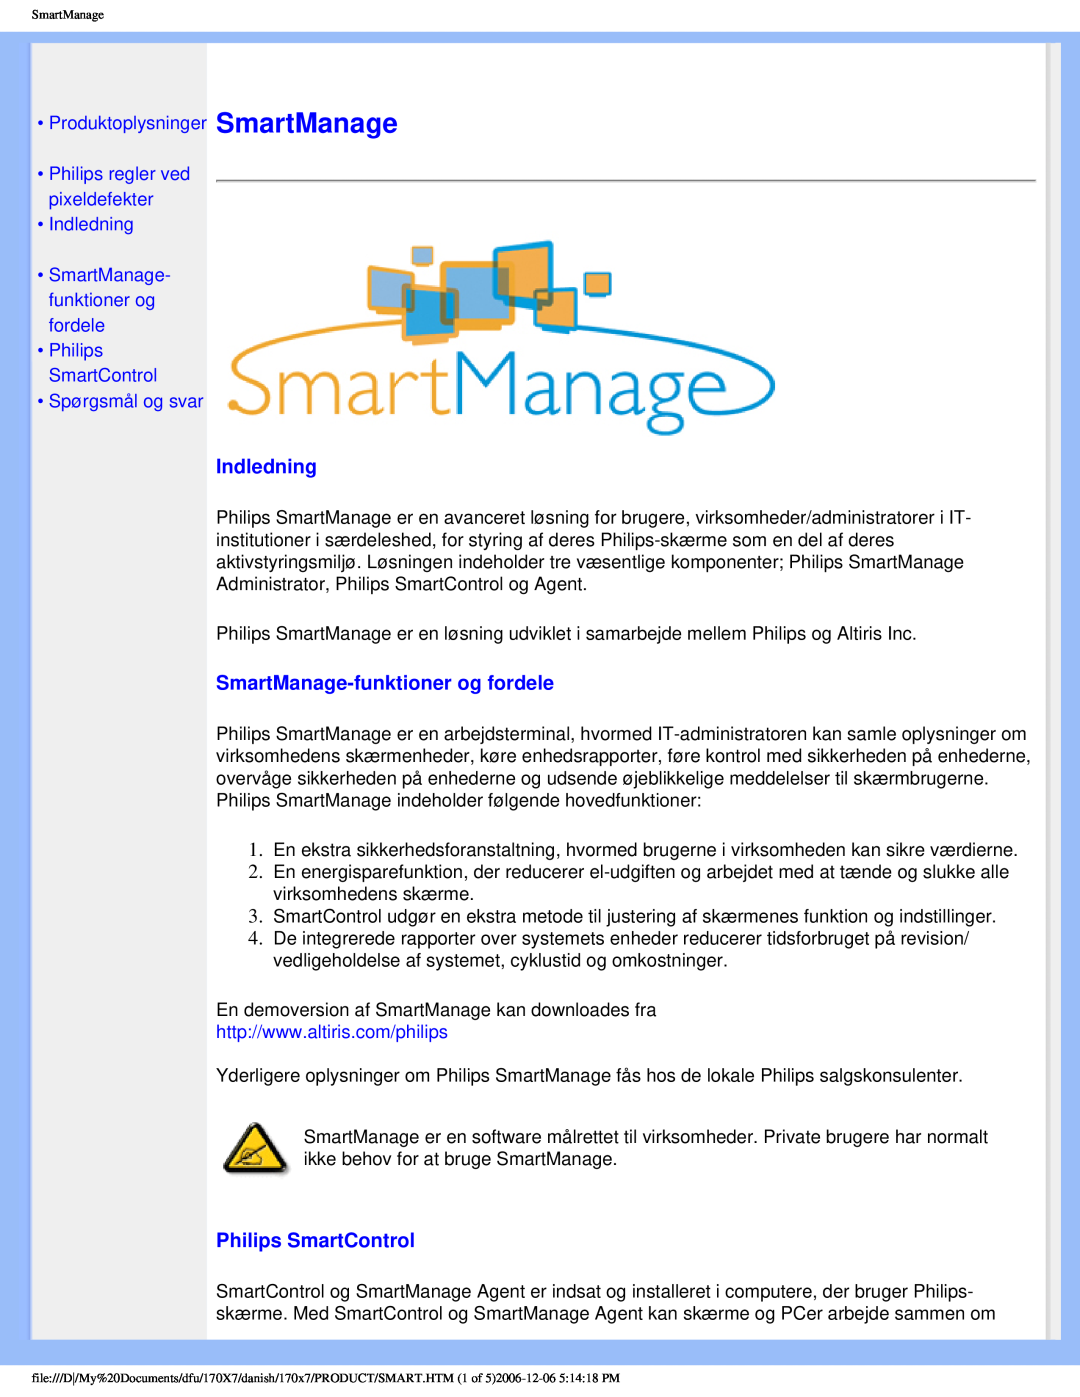 Philips 170x7 user manual Indledning, SmartManage-funktioner og fordele, Philips SmartControl, Spørgsmål og svar 